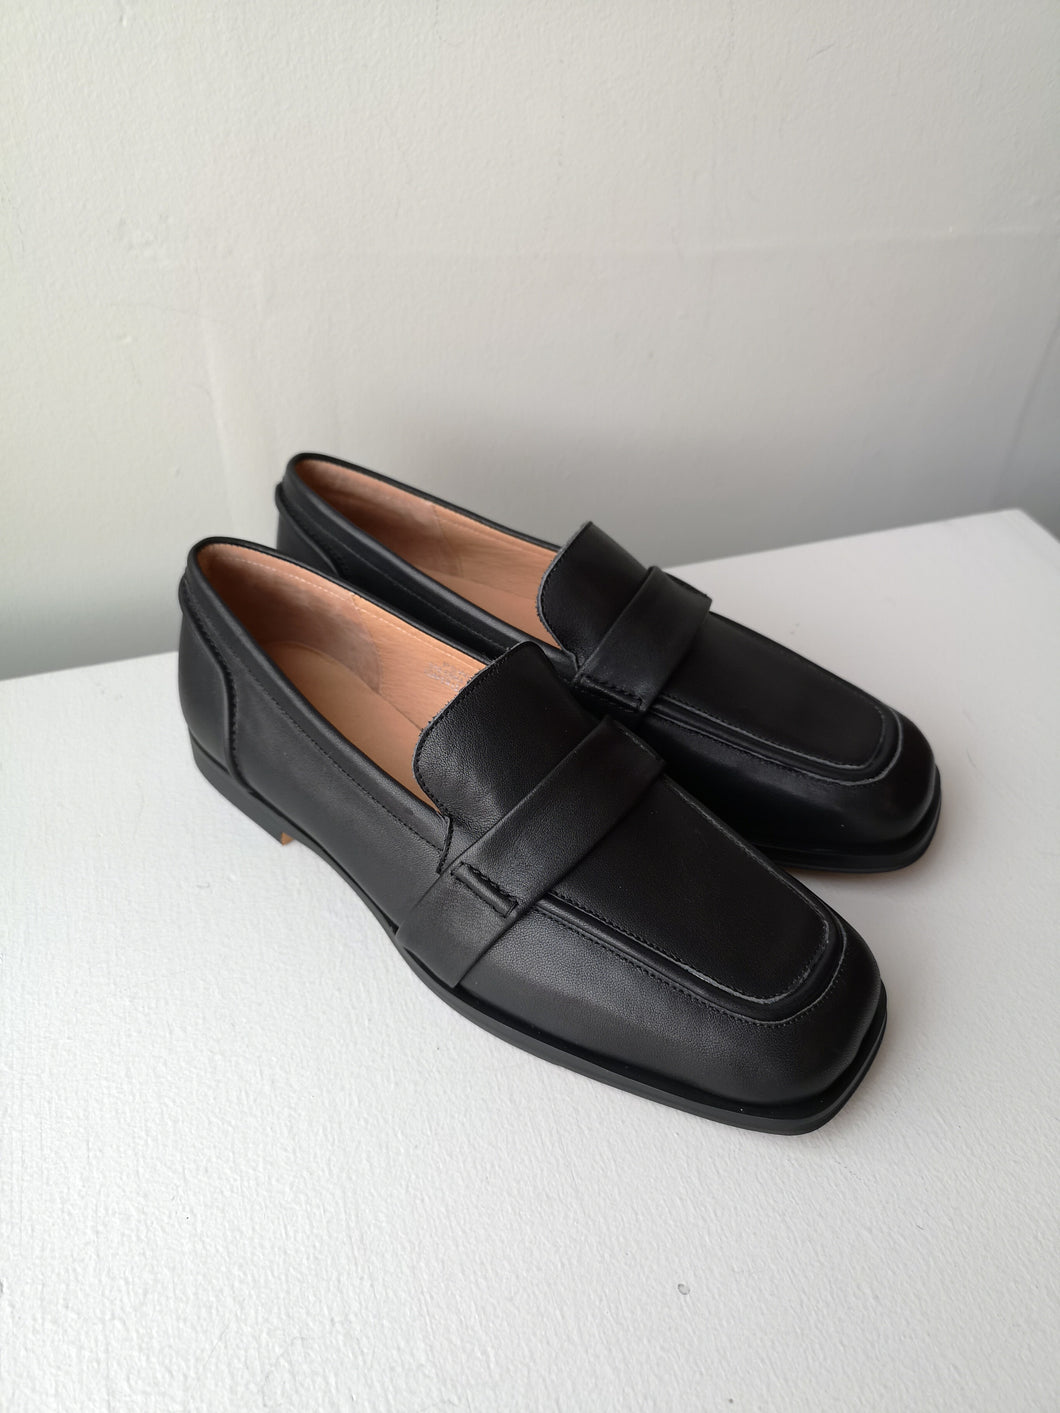 Shoe The Bear Erika Saddle Loafer - Black